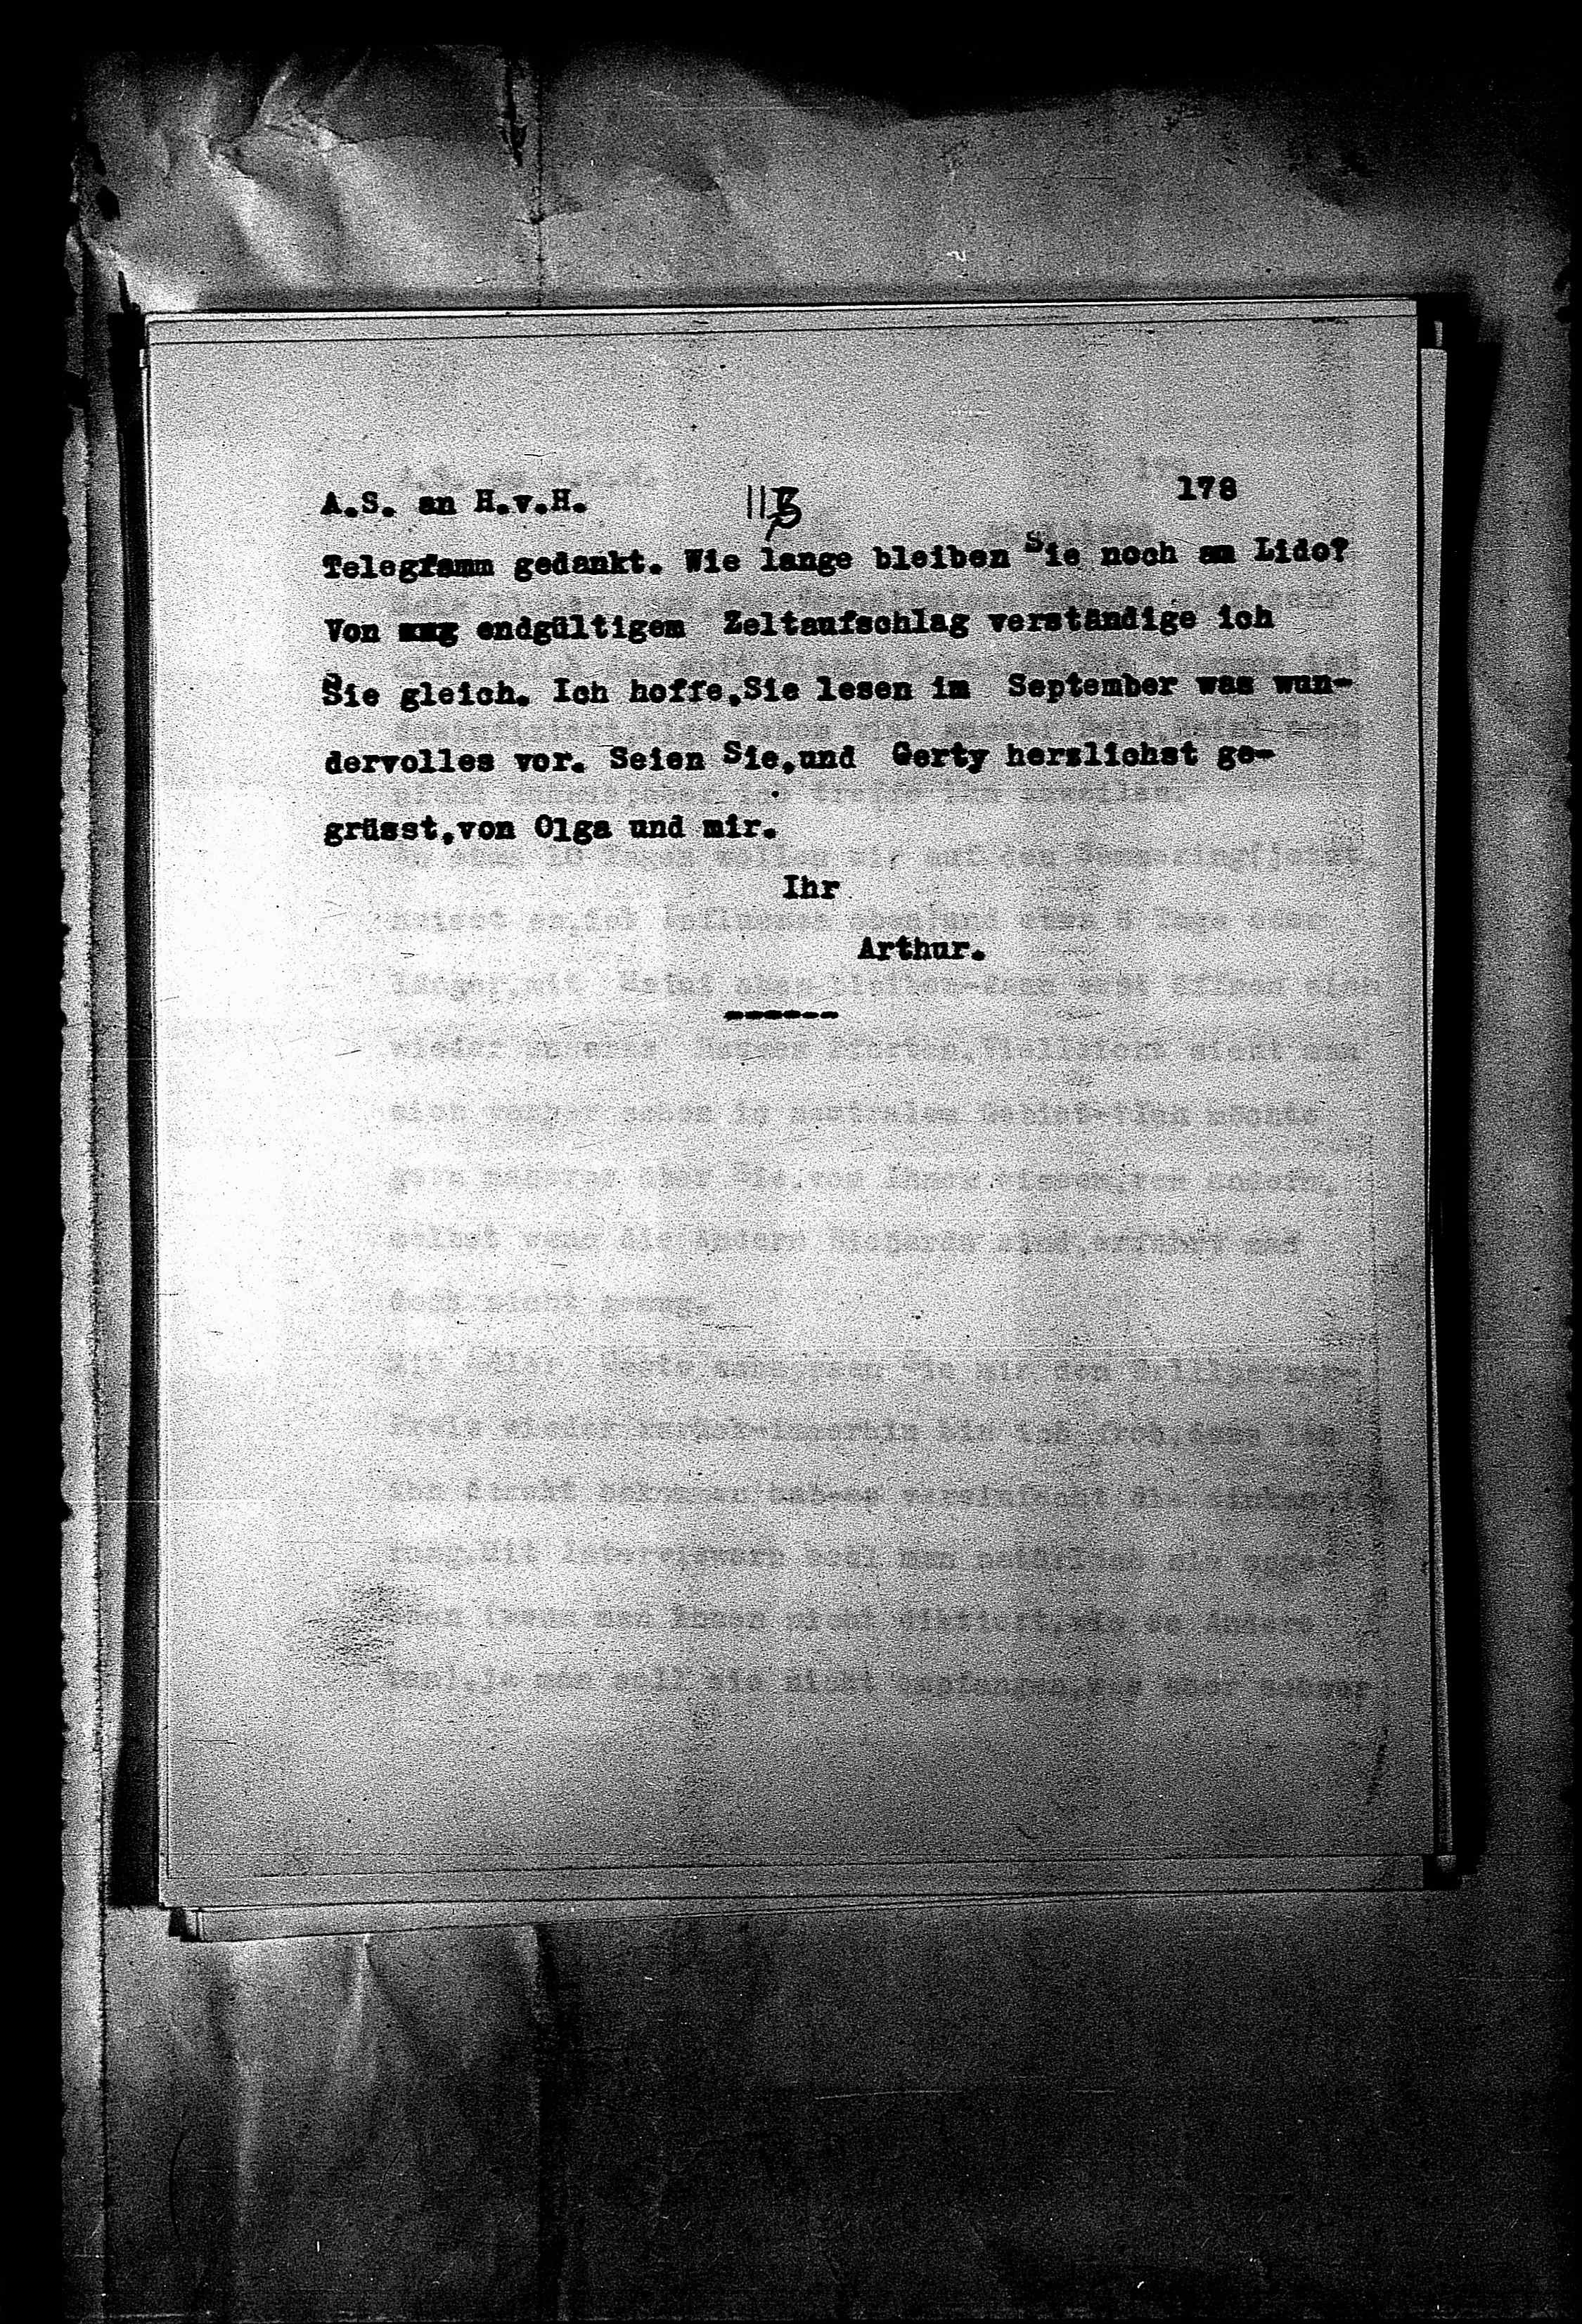 Vorschaubild für Hofmannsthal, Hugo von_AS an HvH Abschrift, HvH an AS, Originale (Mikrofilm 38), Seite 184